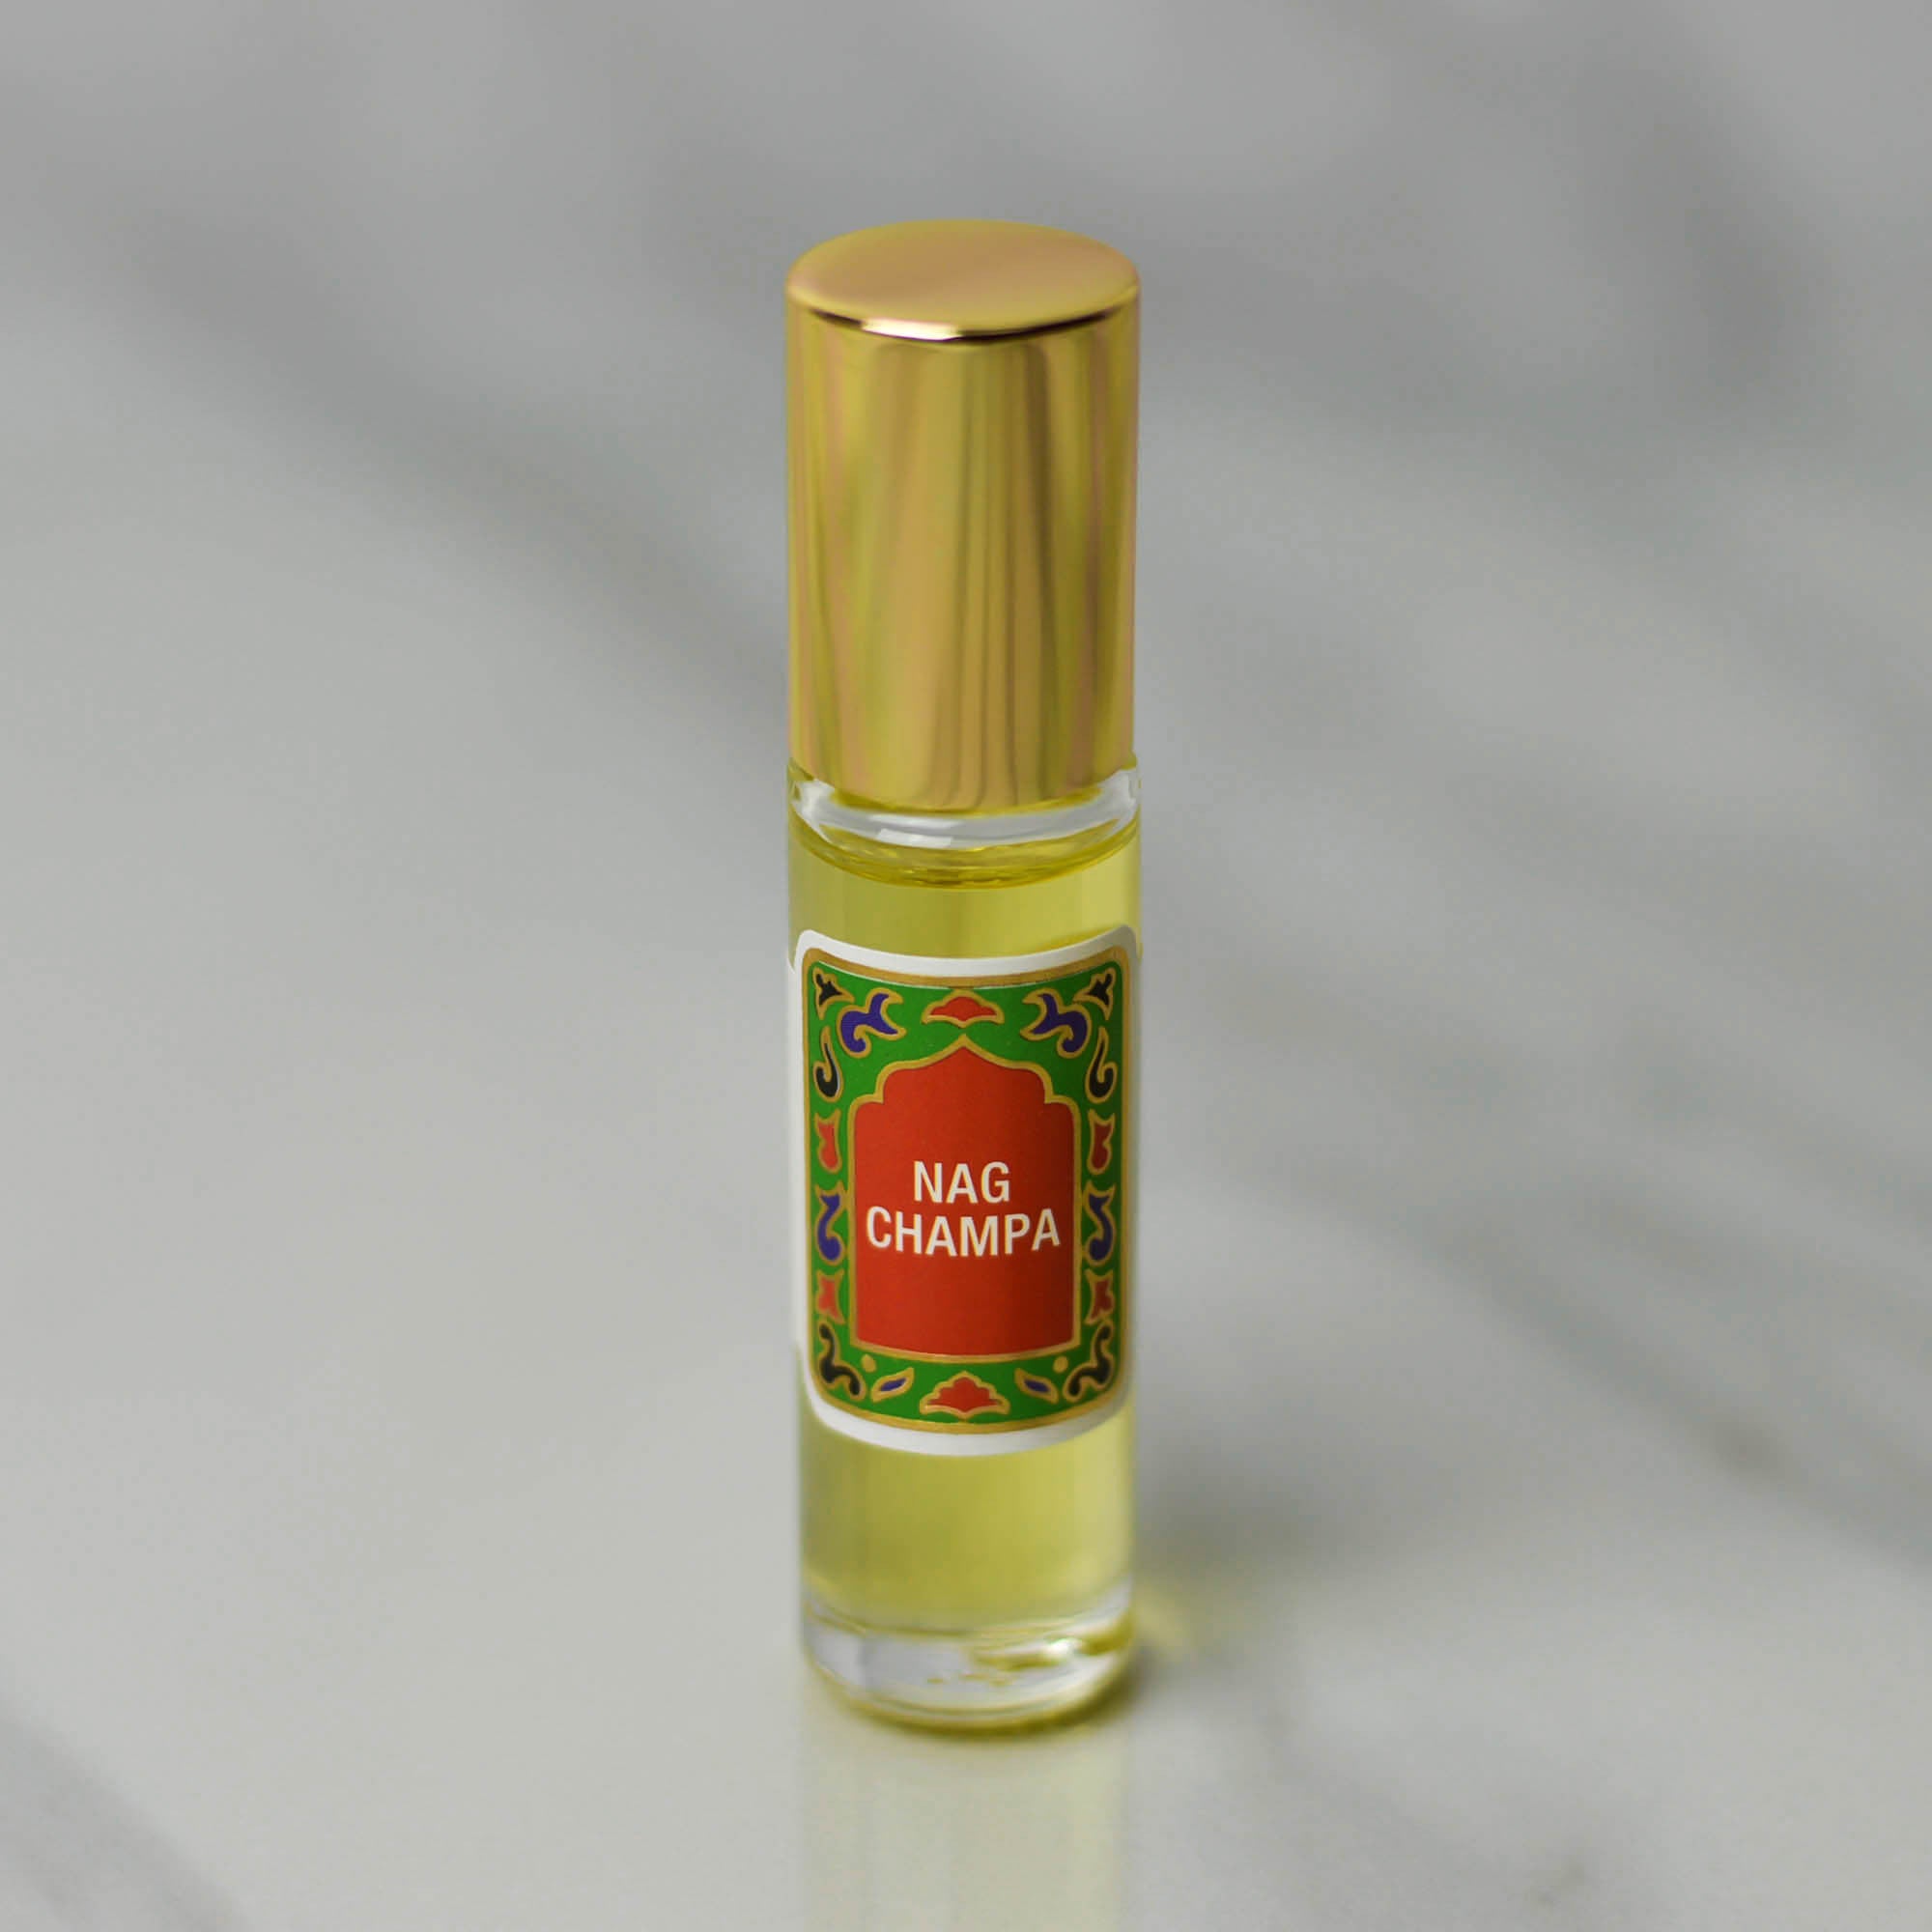 Nag Champa Attar, Essential Oil Perfume